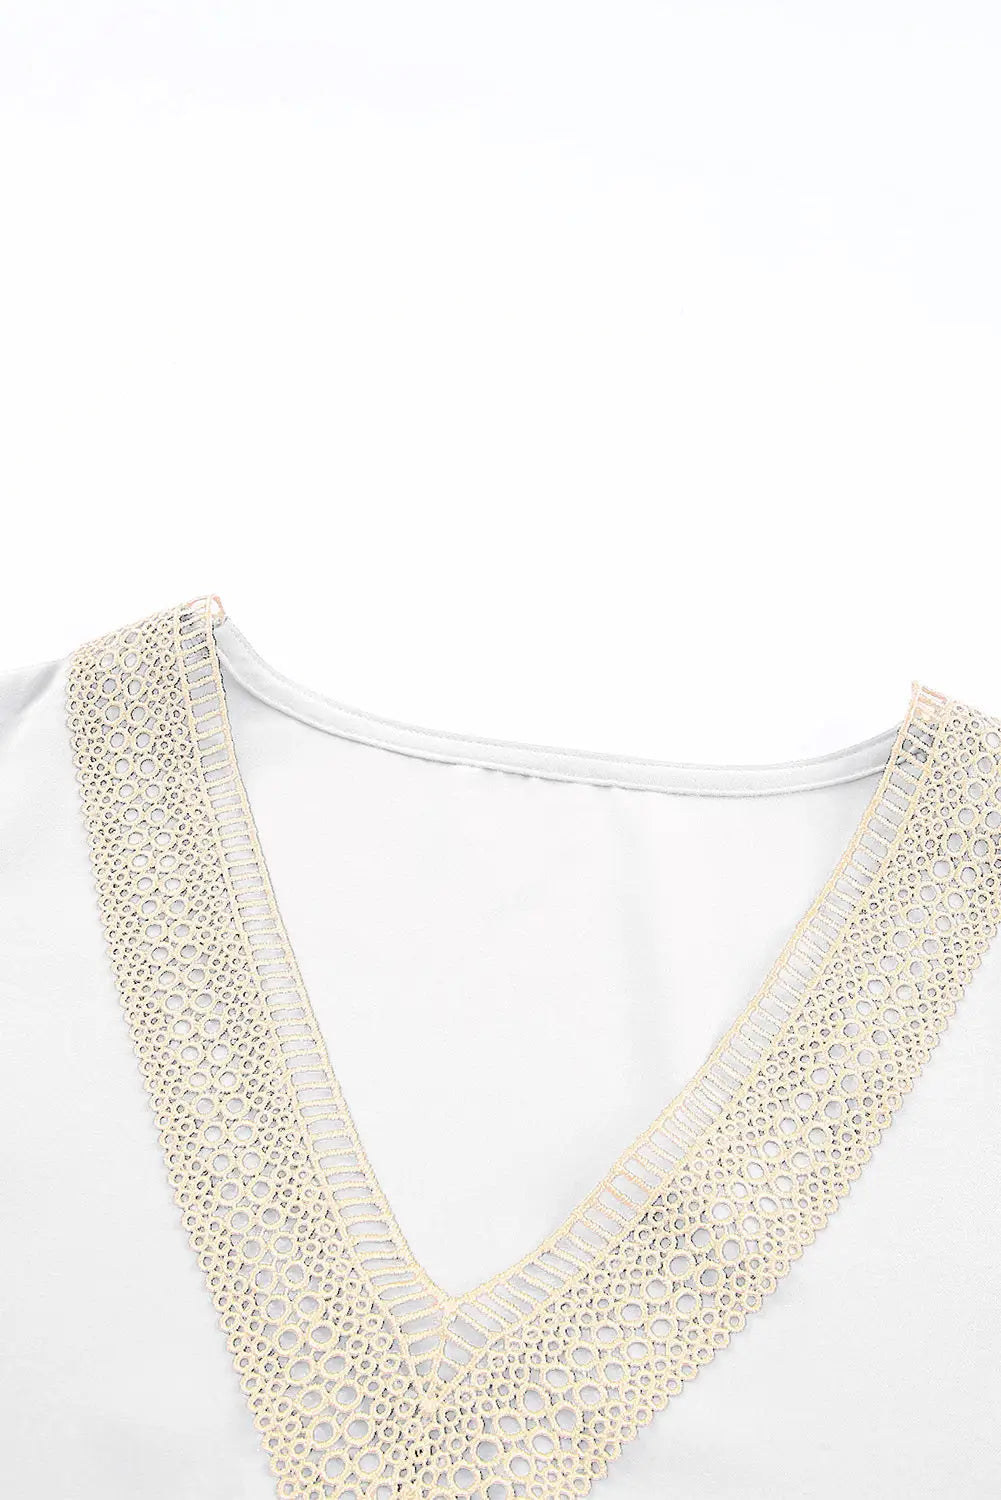 White lace trim short sleeve ruffled mini dress - dresses